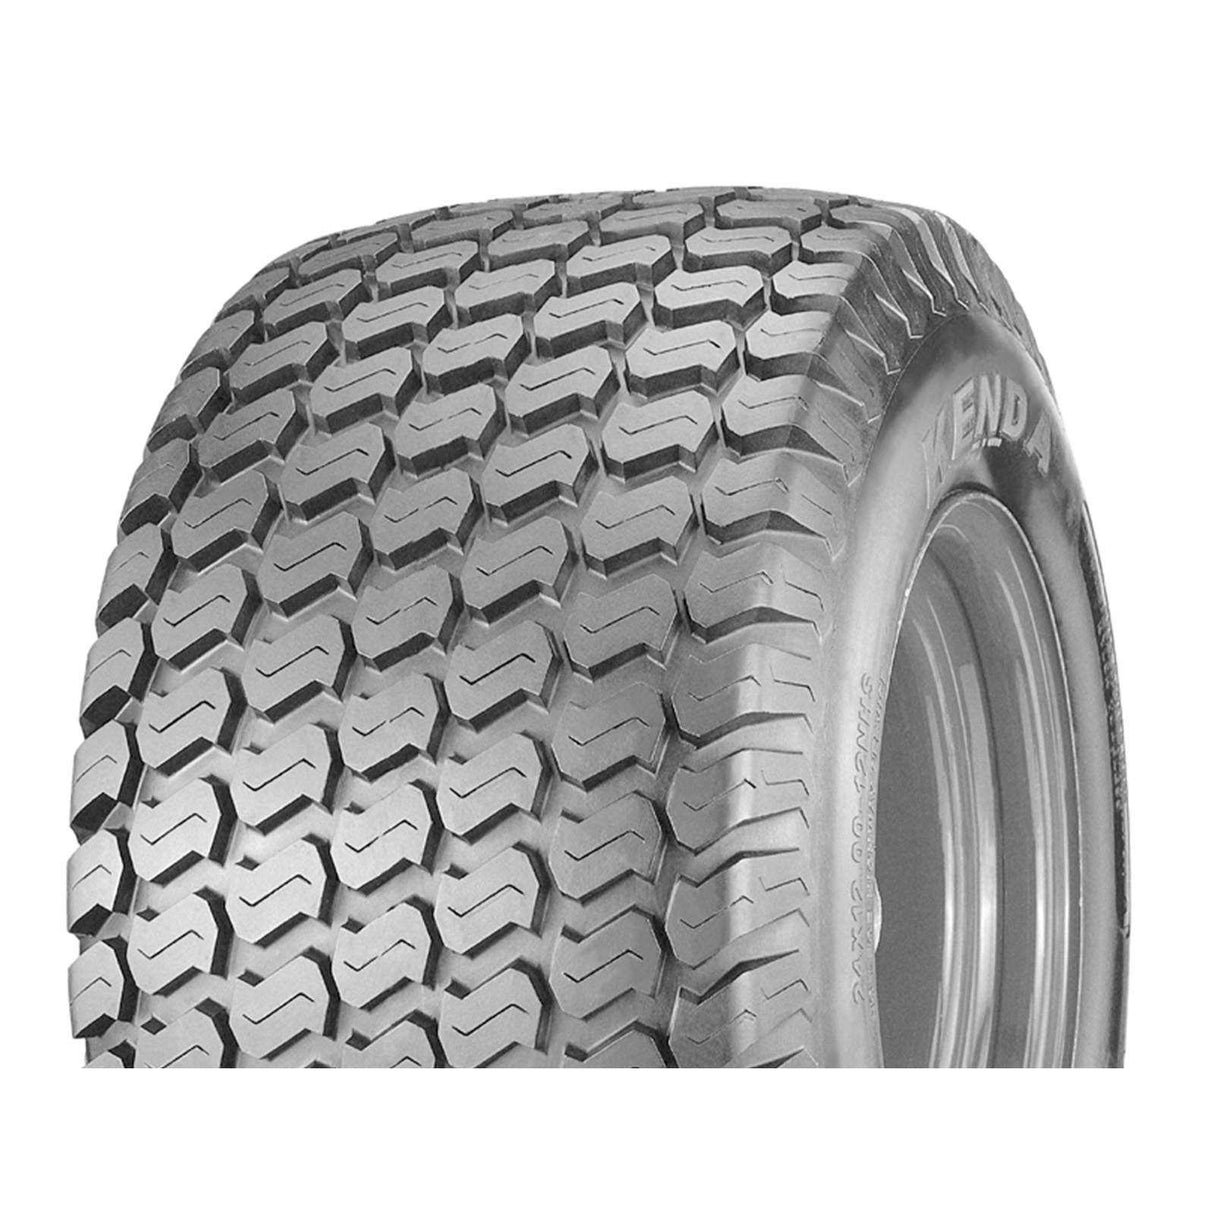 29x12.00-15 K505 100A6 Kenda Heavy Duty Turf Tyre